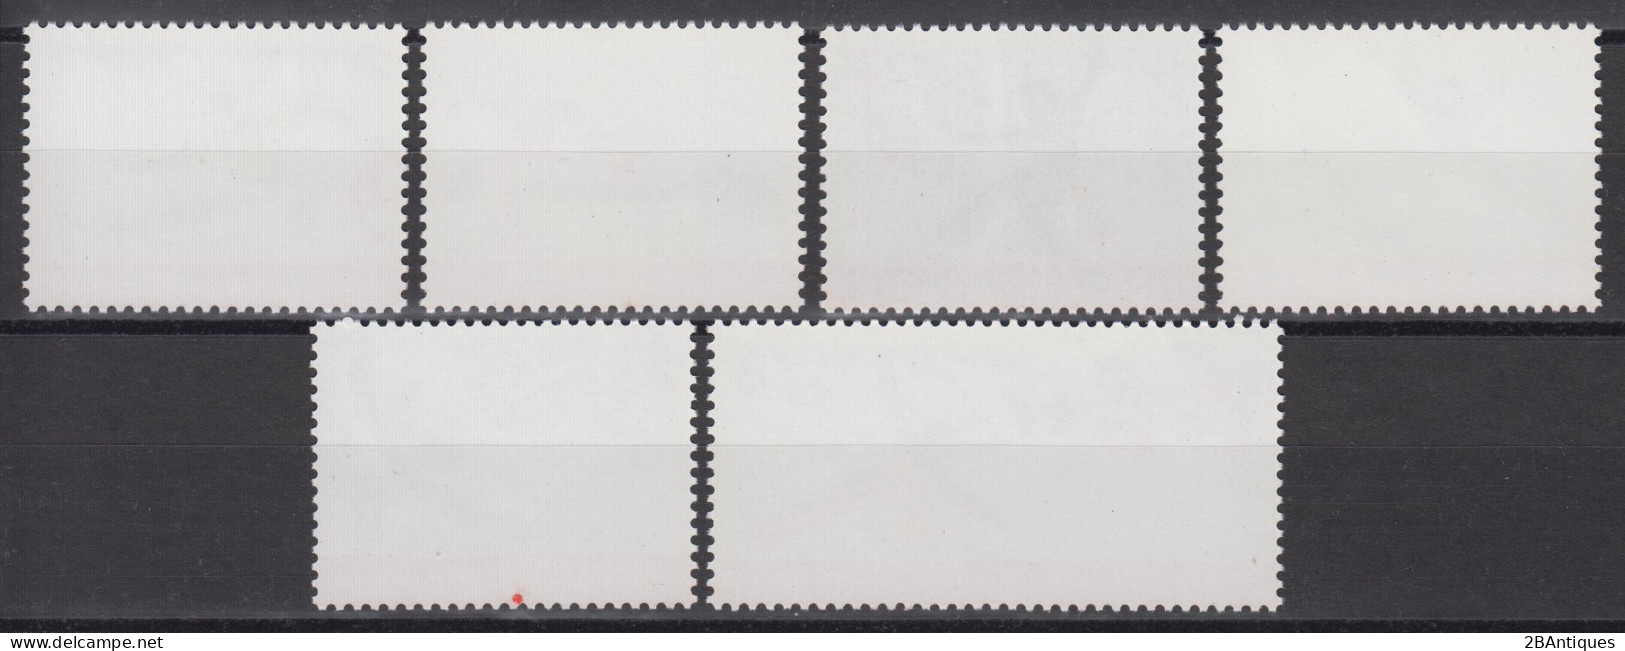 PR CHINA 1975 - Wushu MNH** OG XF - Unused Stamps